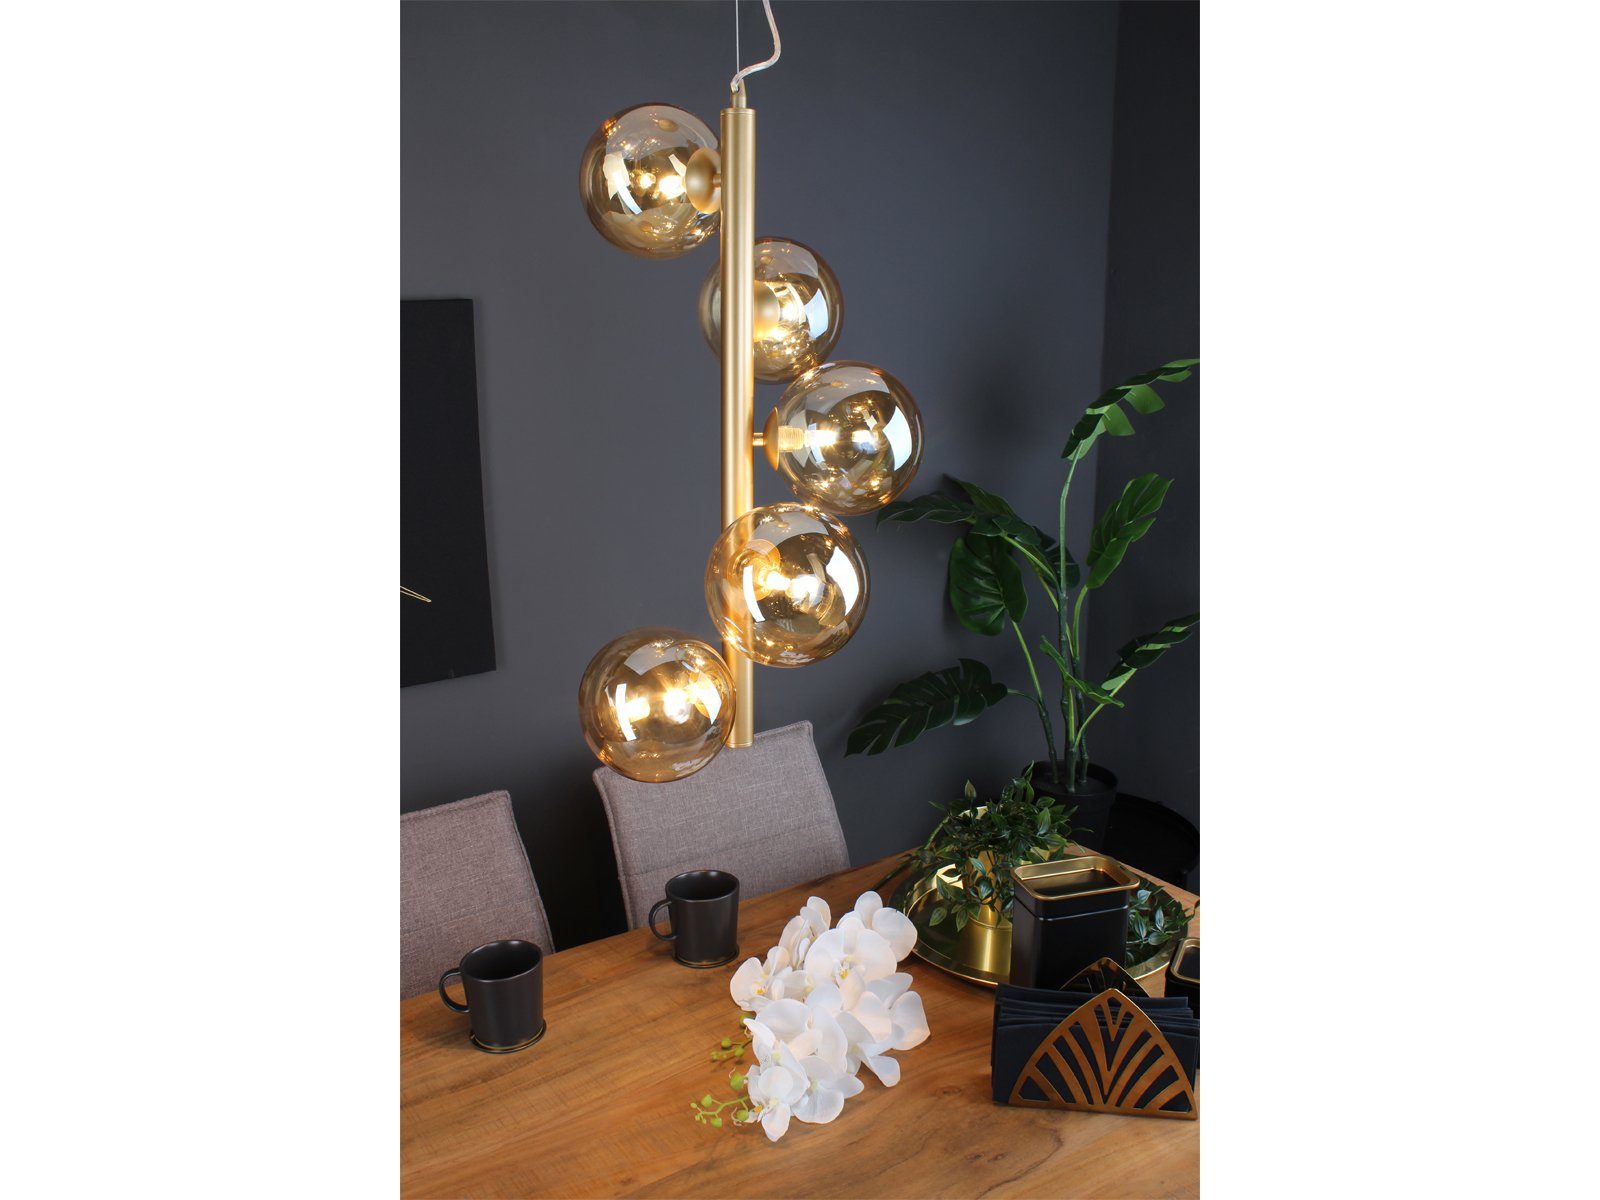 183cm Dimmfunktion, meineWunschleuchte LED Bauhaus für ausgefallene Messing-Amber Glas-kugel Lampe 5x Gold, Esstisch über wechselbar, Pendelleuchte, Warmweiß, LED